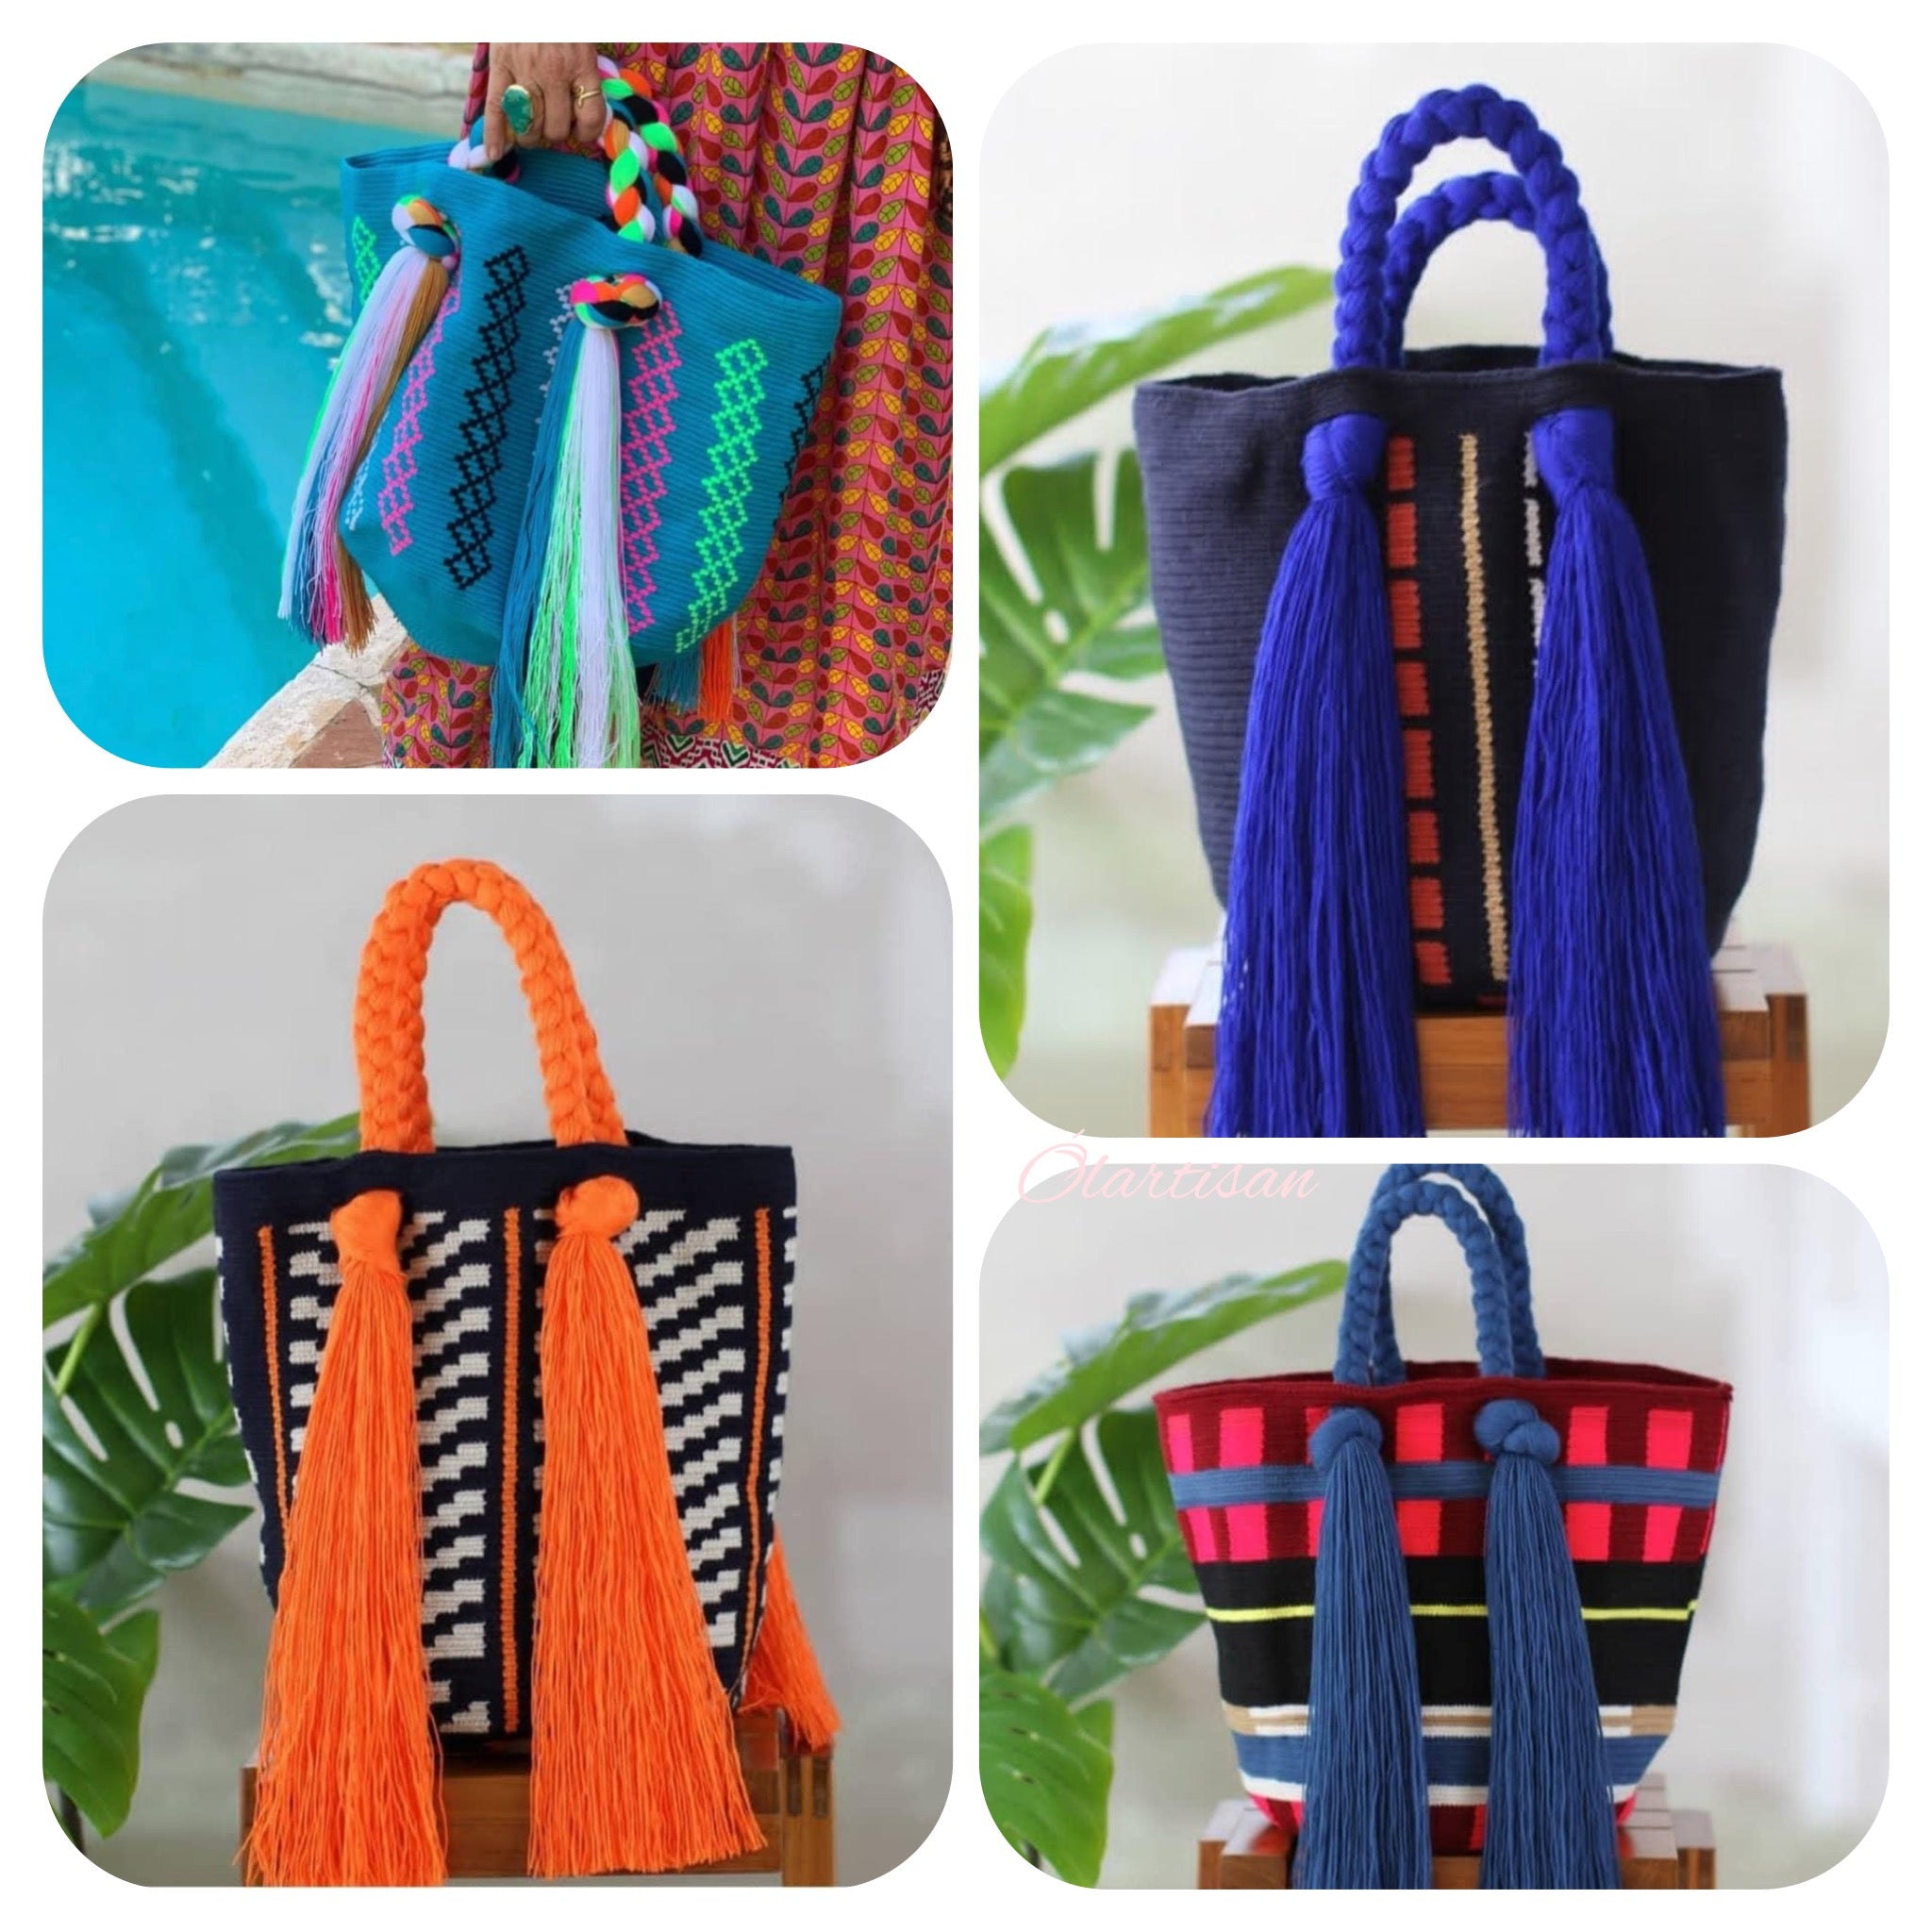 Women's Handbags & Purses for sale in Villavicencio, Colombia